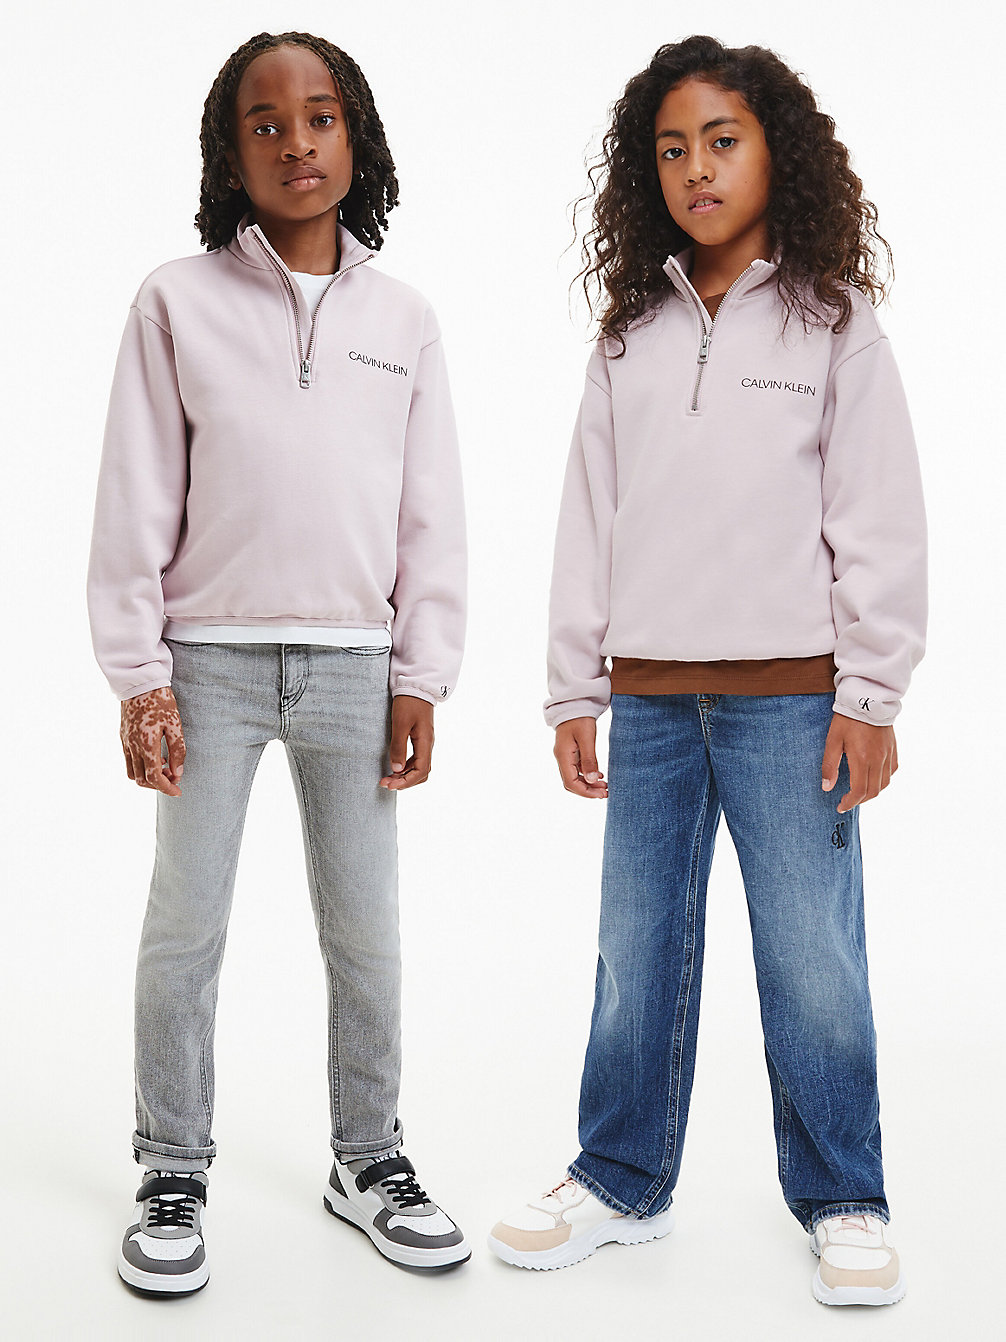 HAWAII ORCHID Lässiges Unisex Sweatshirt Mit Reißverschlusskragen undefined kids unisex Calvin Klein